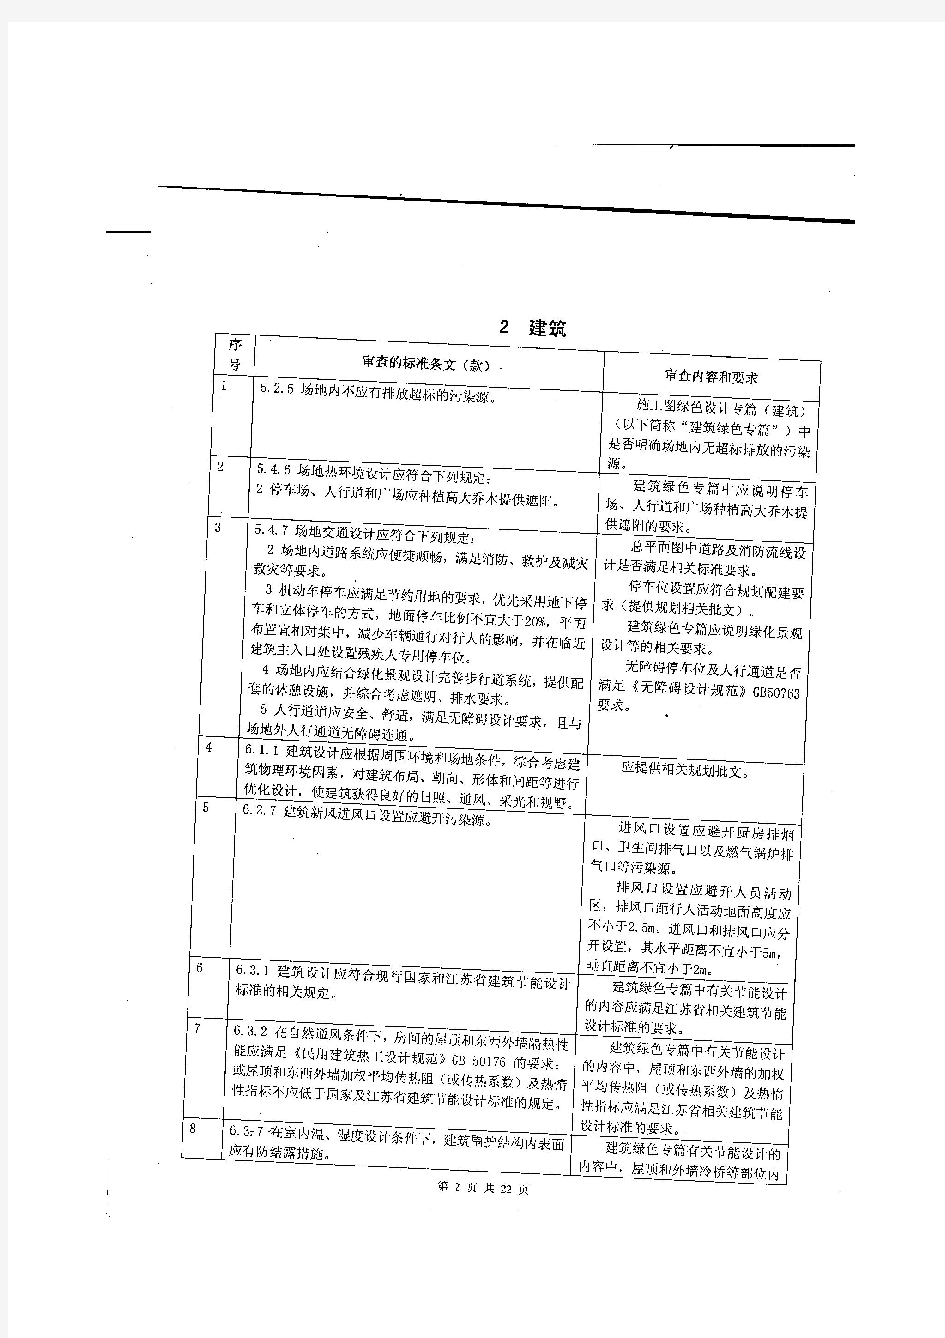 江苏省绿色建筑施工图设计文件技术审查要点试行(2014年版)